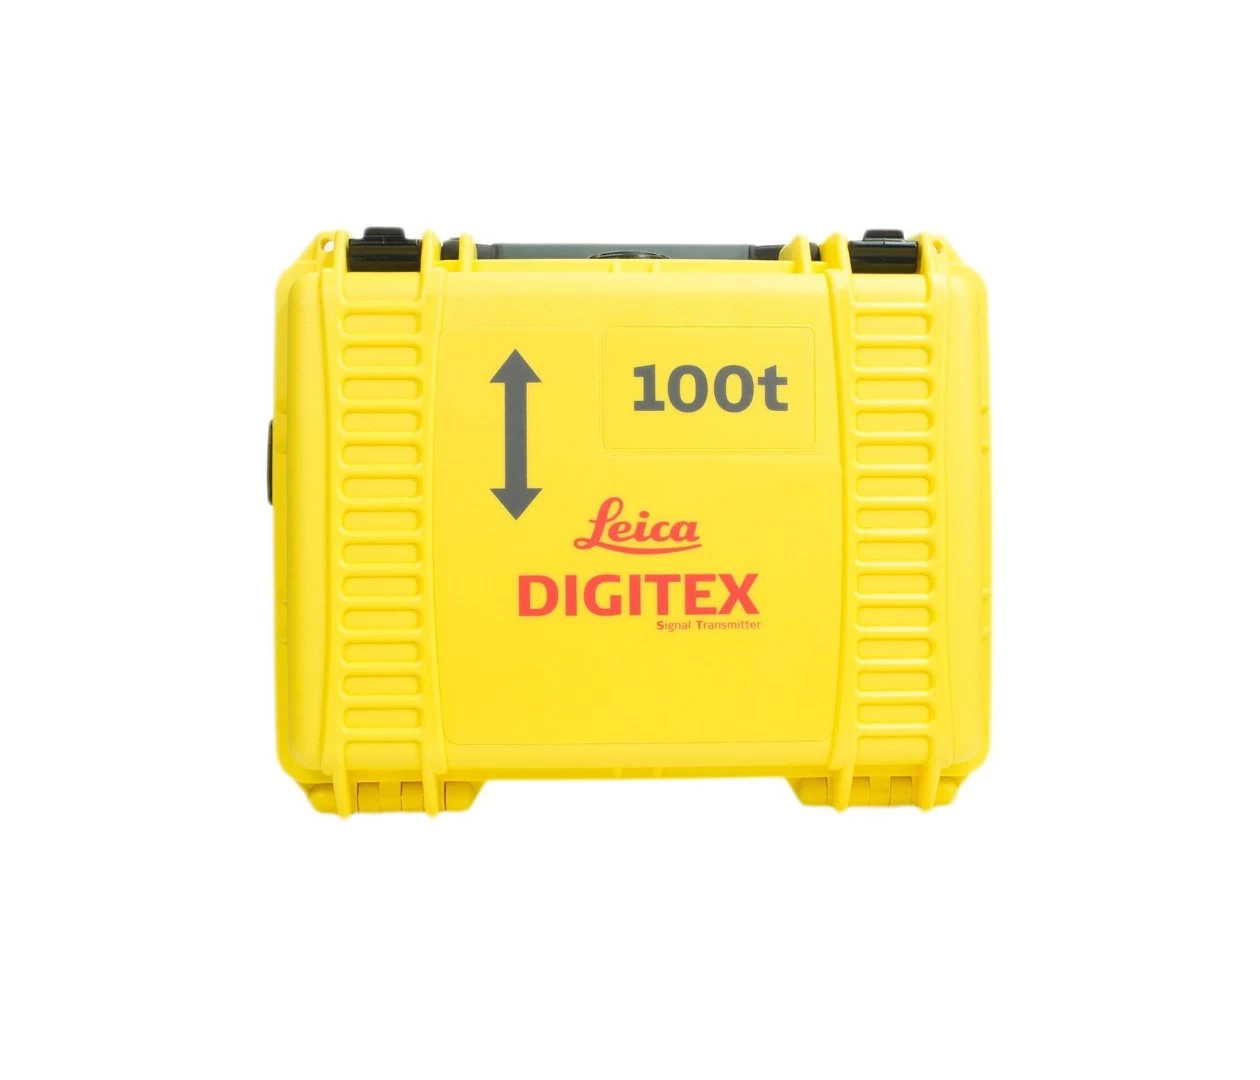 Генератор DIGITEX 100t - 2